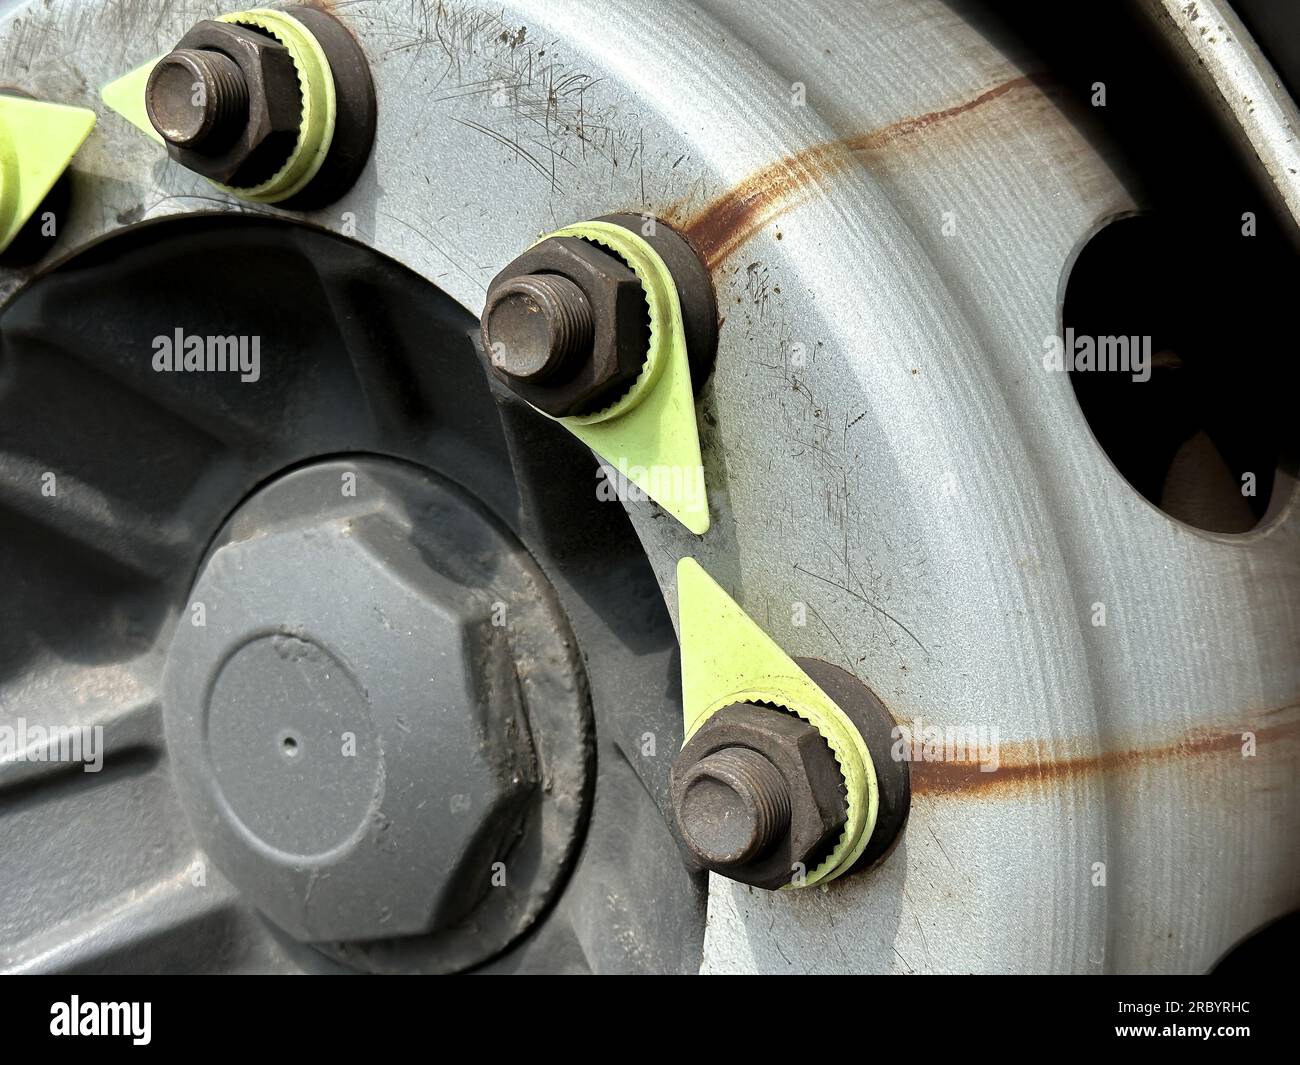 Die Anzeigen für Rad, Reifen und Muttern des Lkws zeigen Mängel an der Spannmutter Stockfoto